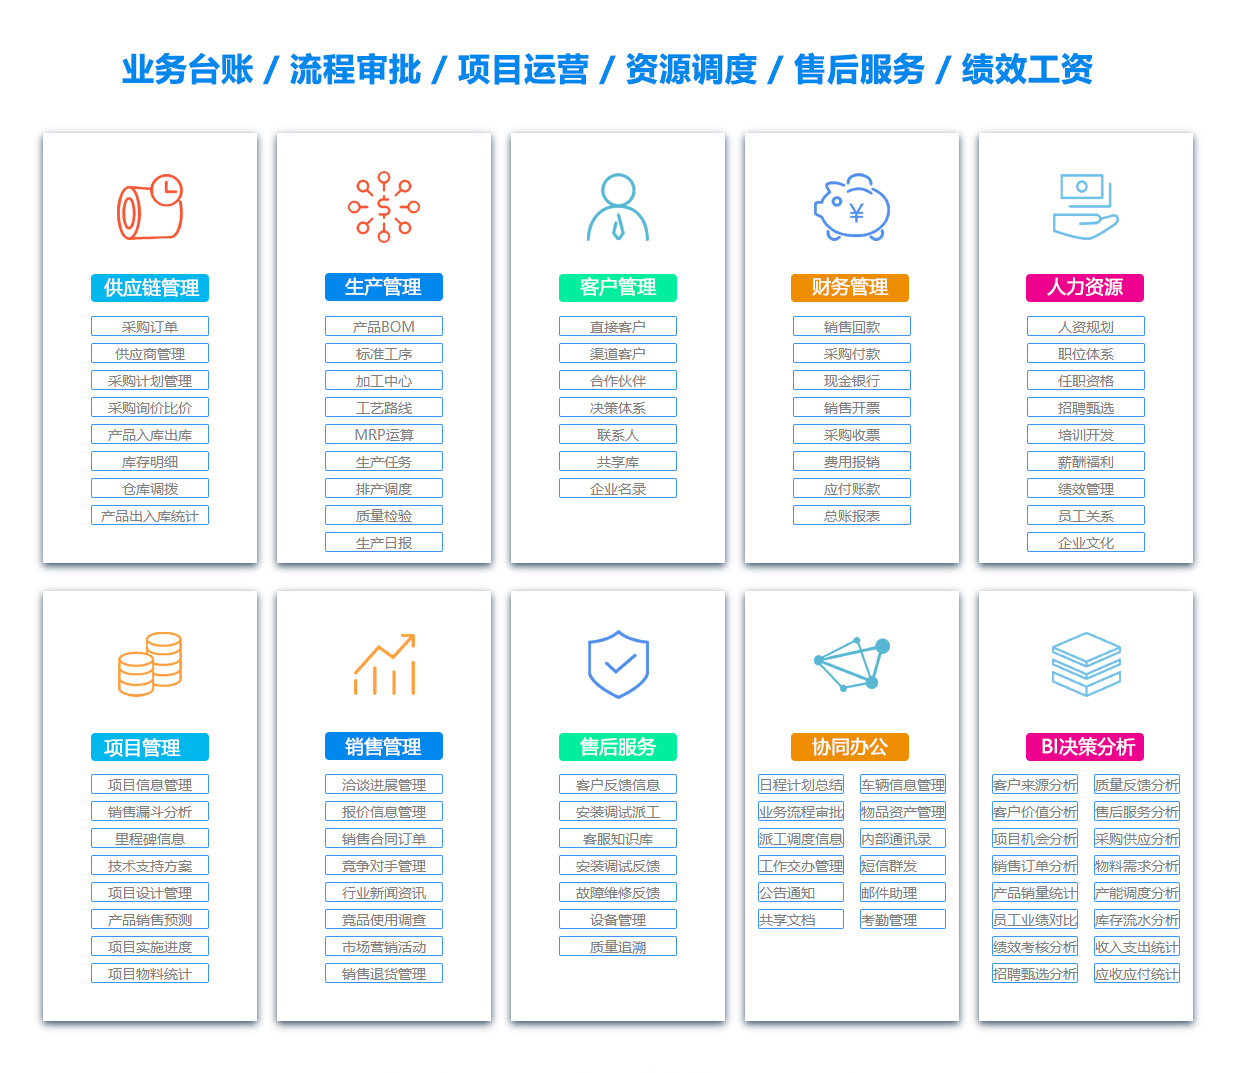 惠州BOM:物料清单软件